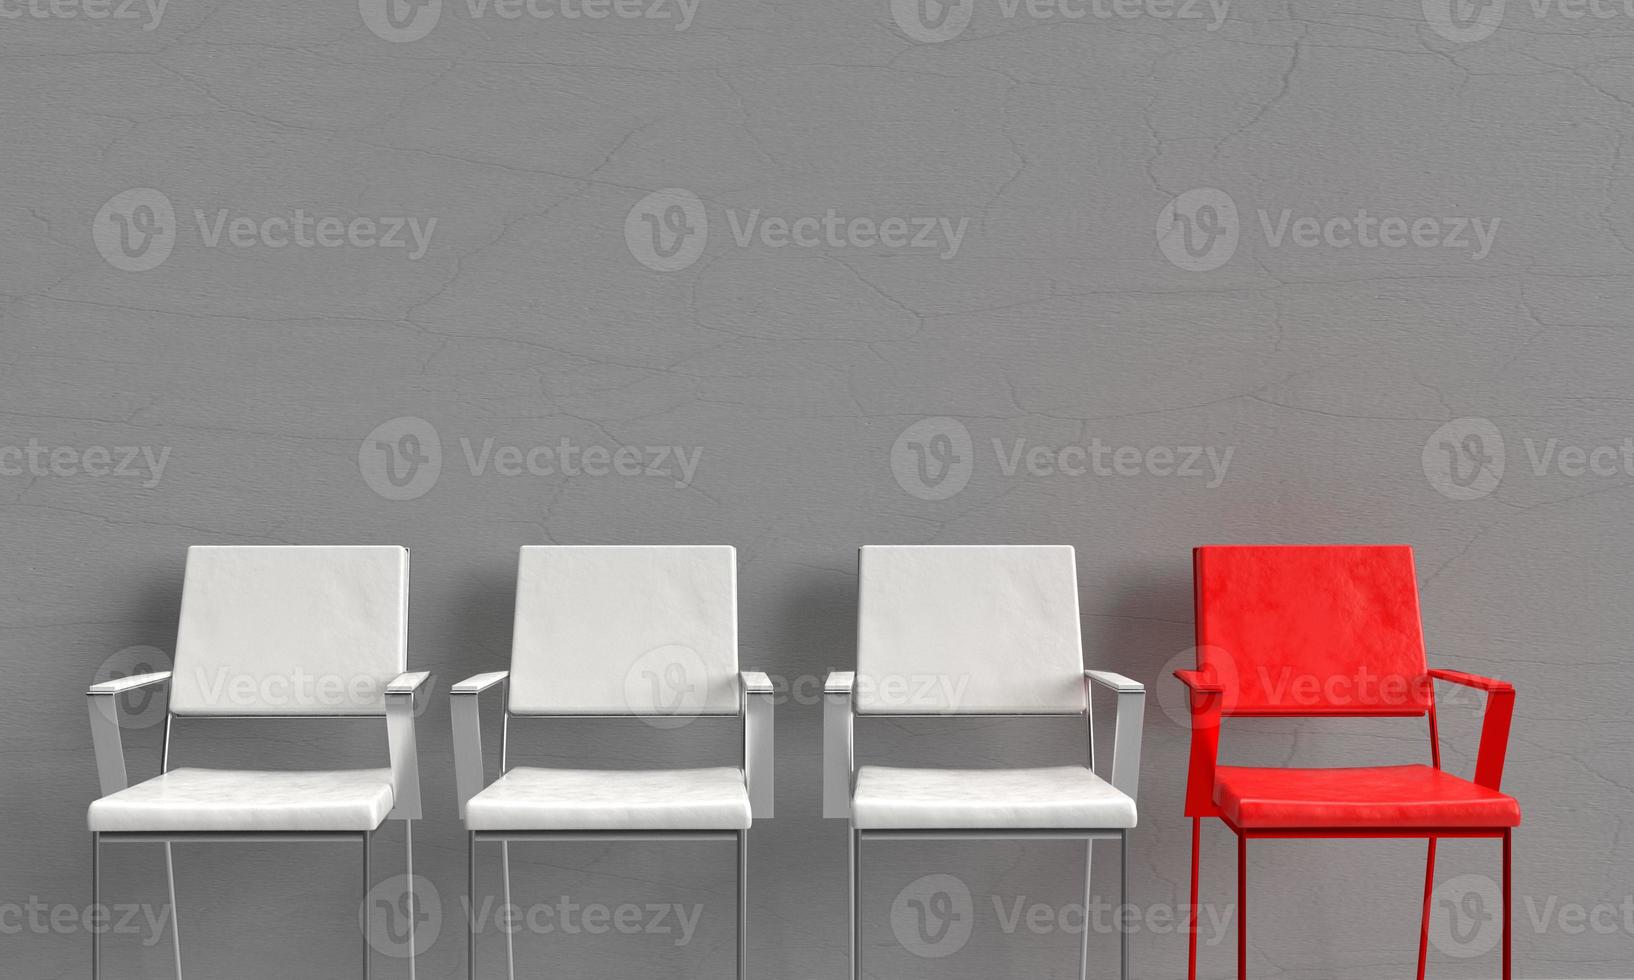 silla blanco aislado color grupo diferente rojo rosa símbolo decoración recursos humanos hr reclutamiento liderazgo entrevista persona éxito liderazgo trabajo carrera camino oportunidad empleado entrevista foto